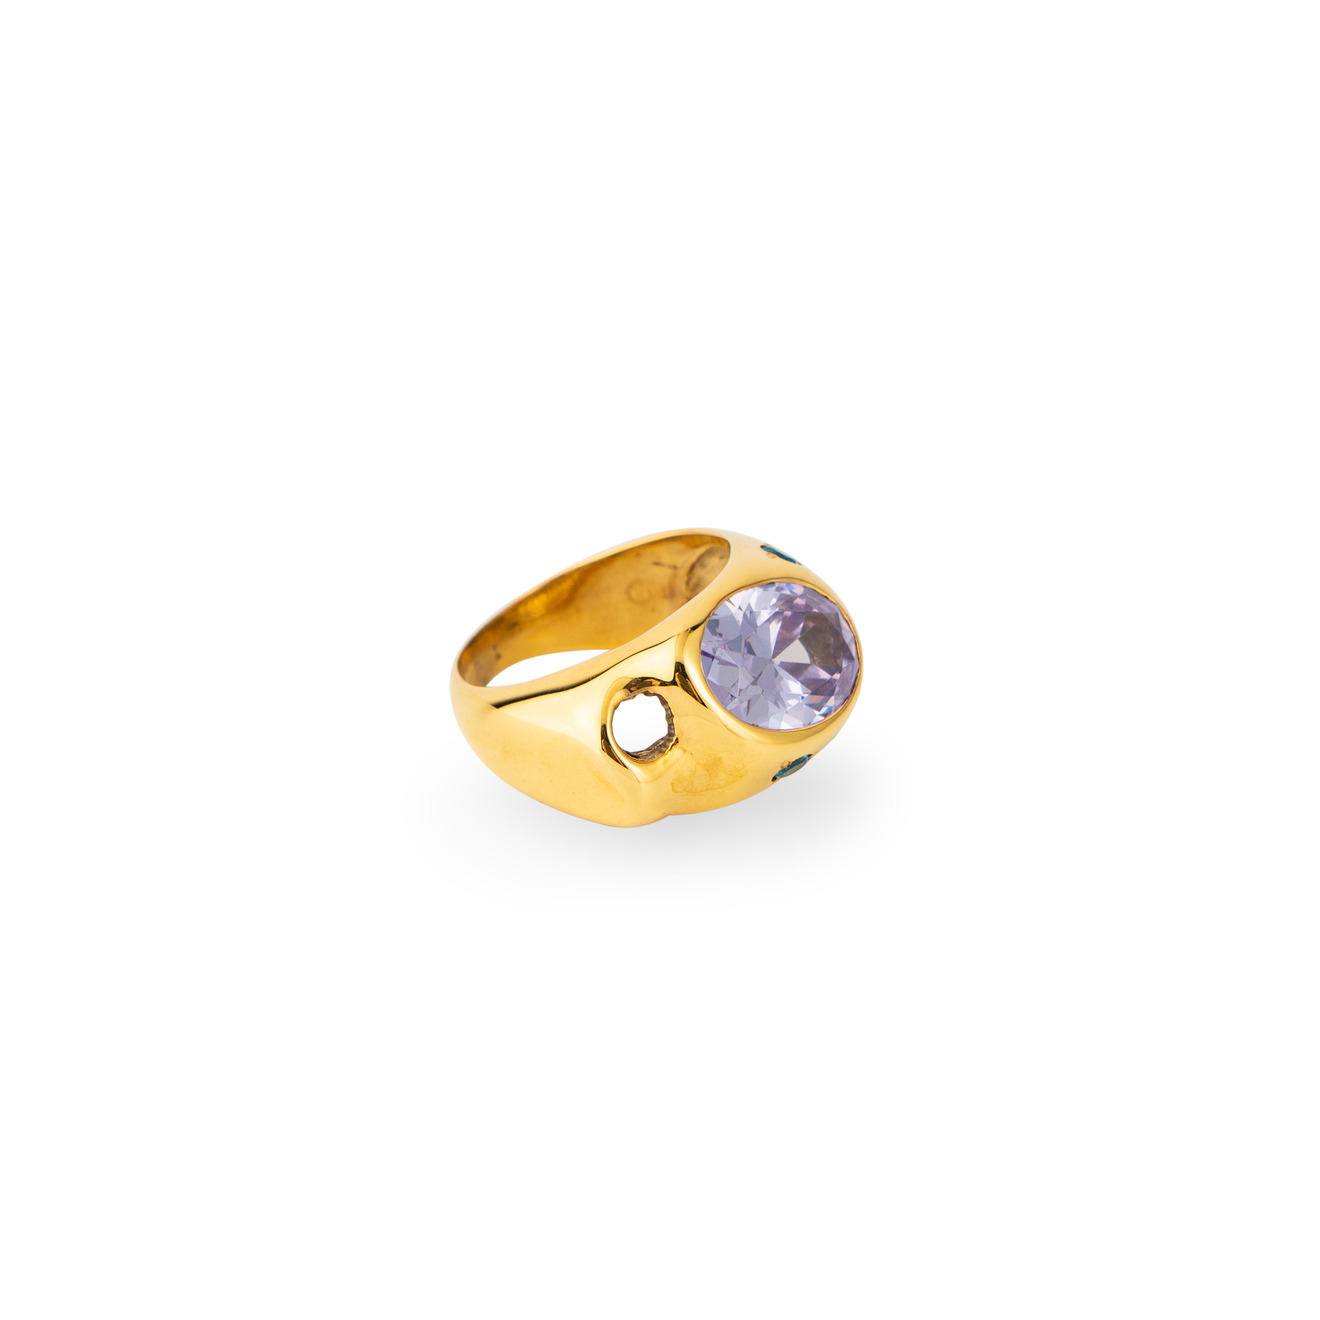 Janashia Золотистое кольцо Ava волнообразной формы со вставками из розово-голубых кристаллов janashia позолоченные серьги susan со вставками из белого жемчуга